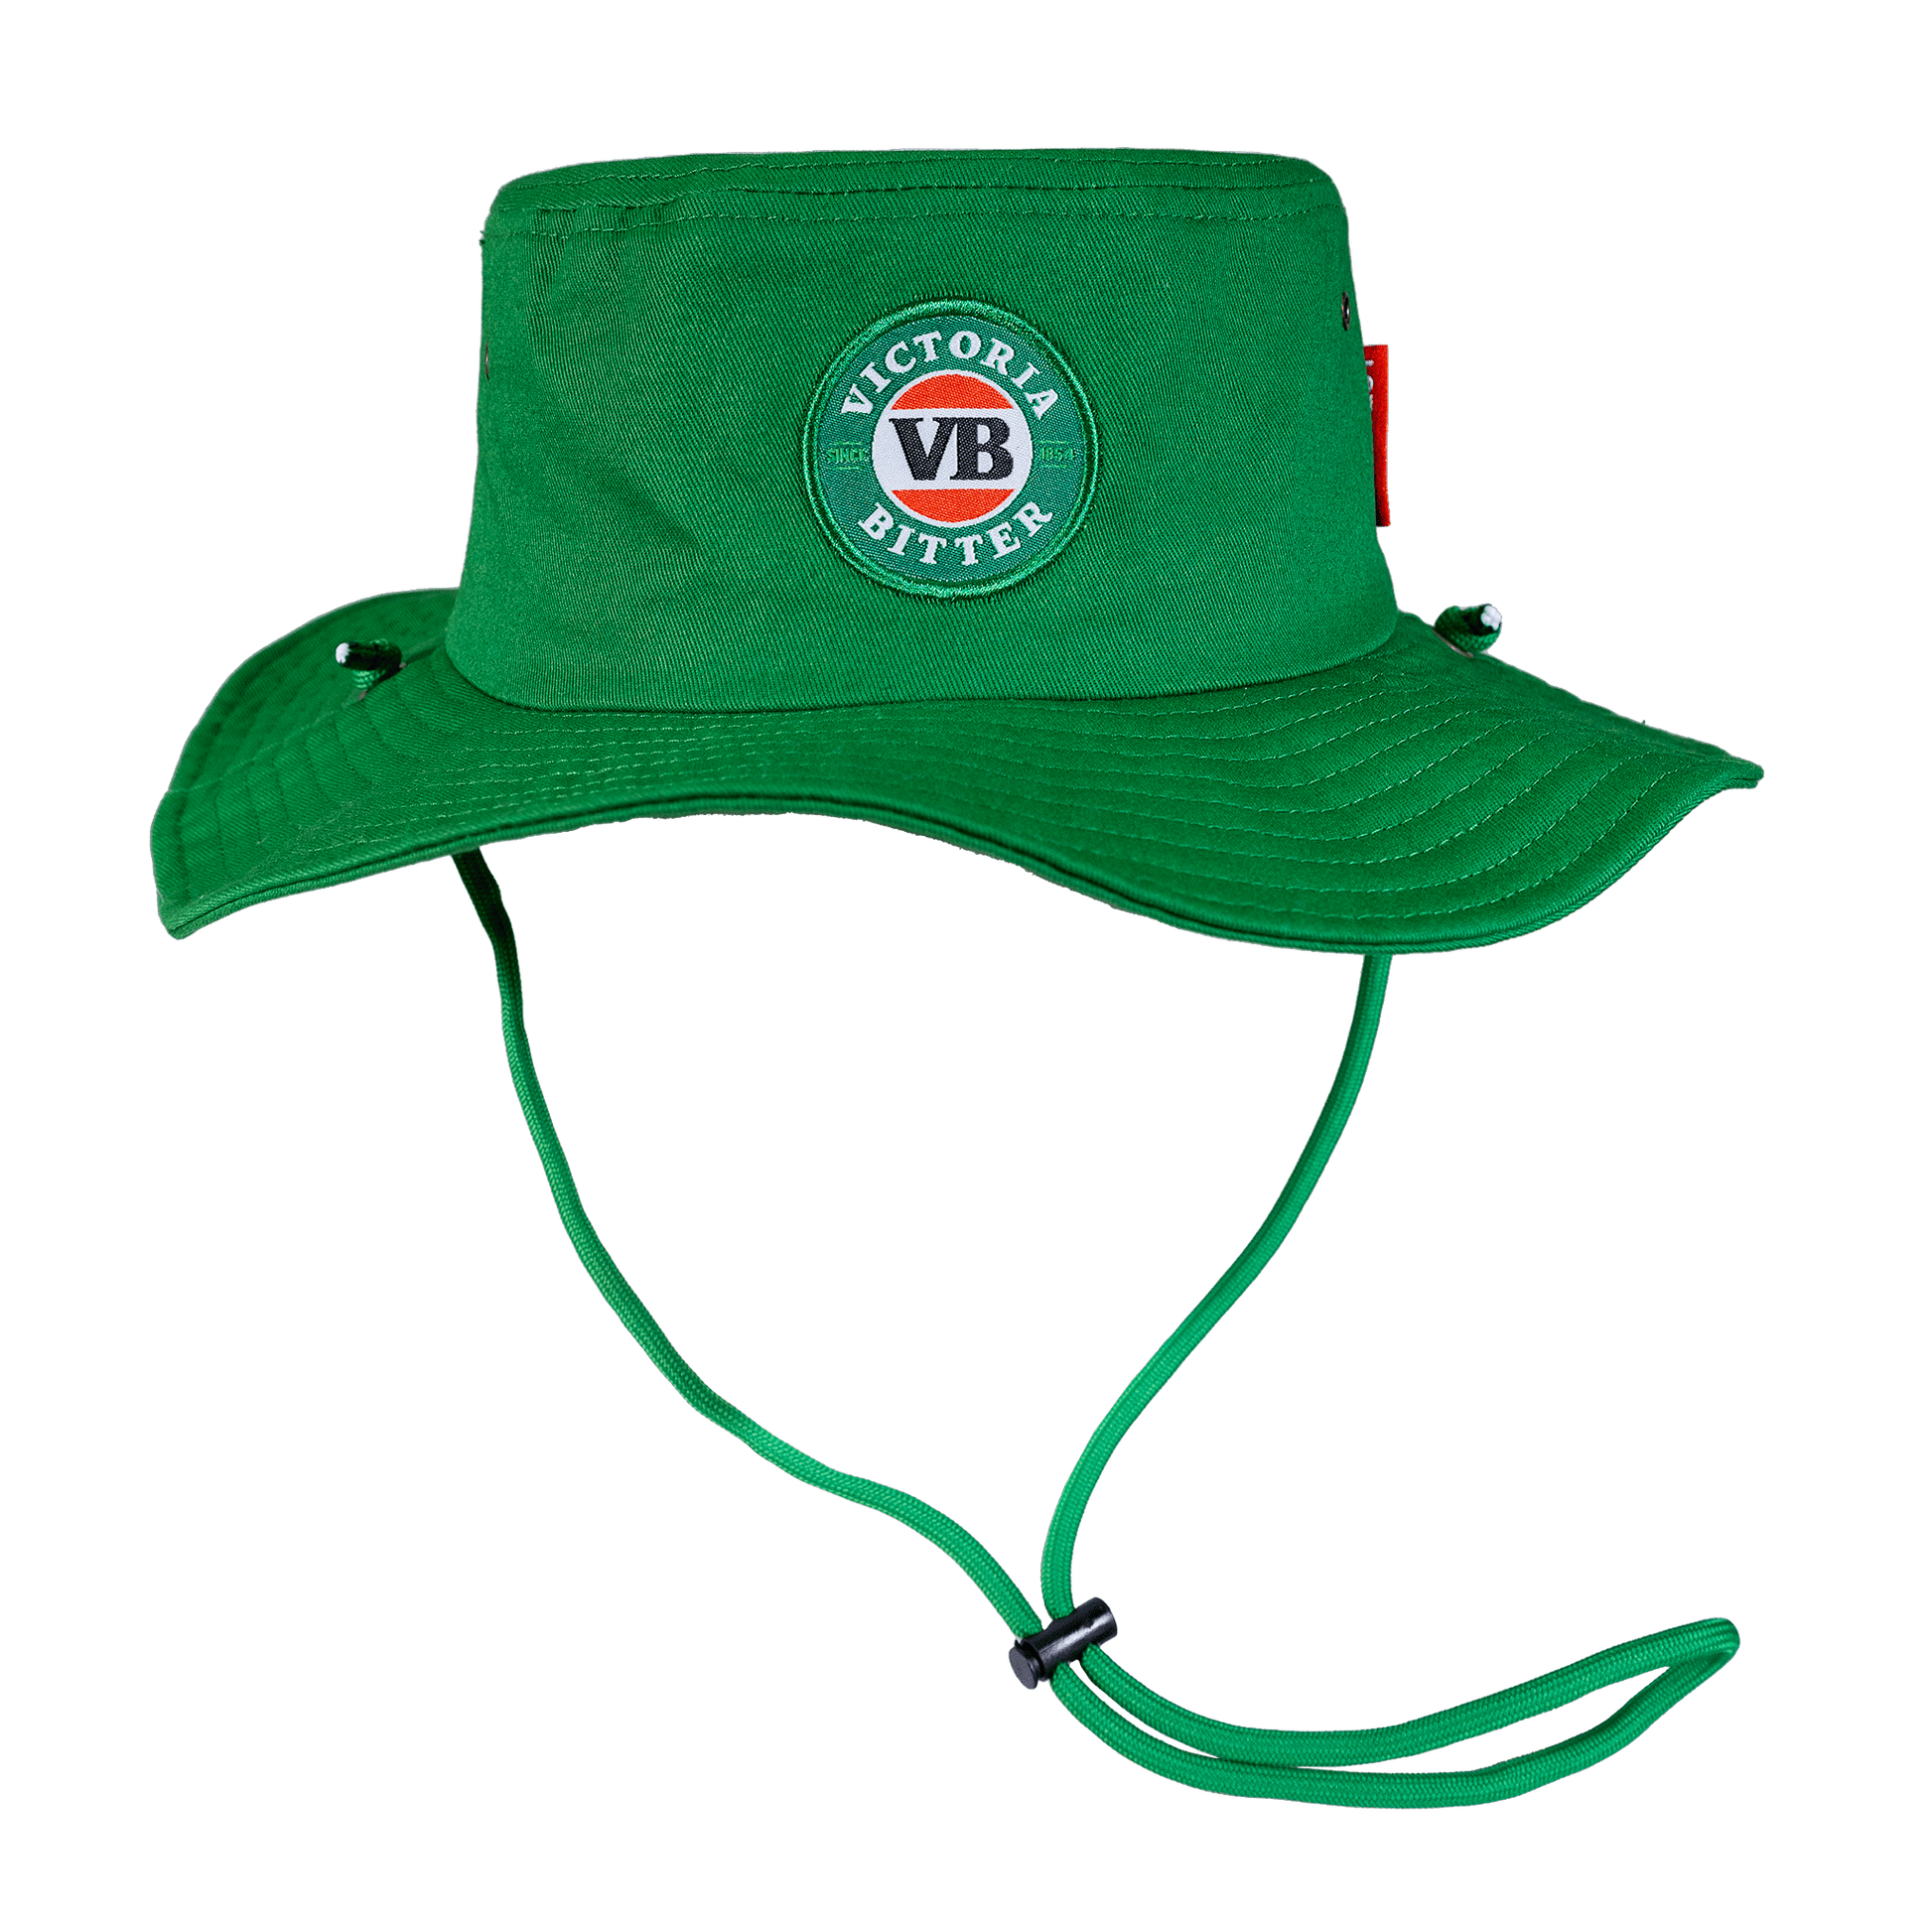 Victor Bravo's Wide Brim Hat VB 2018 Wide Brim Hat